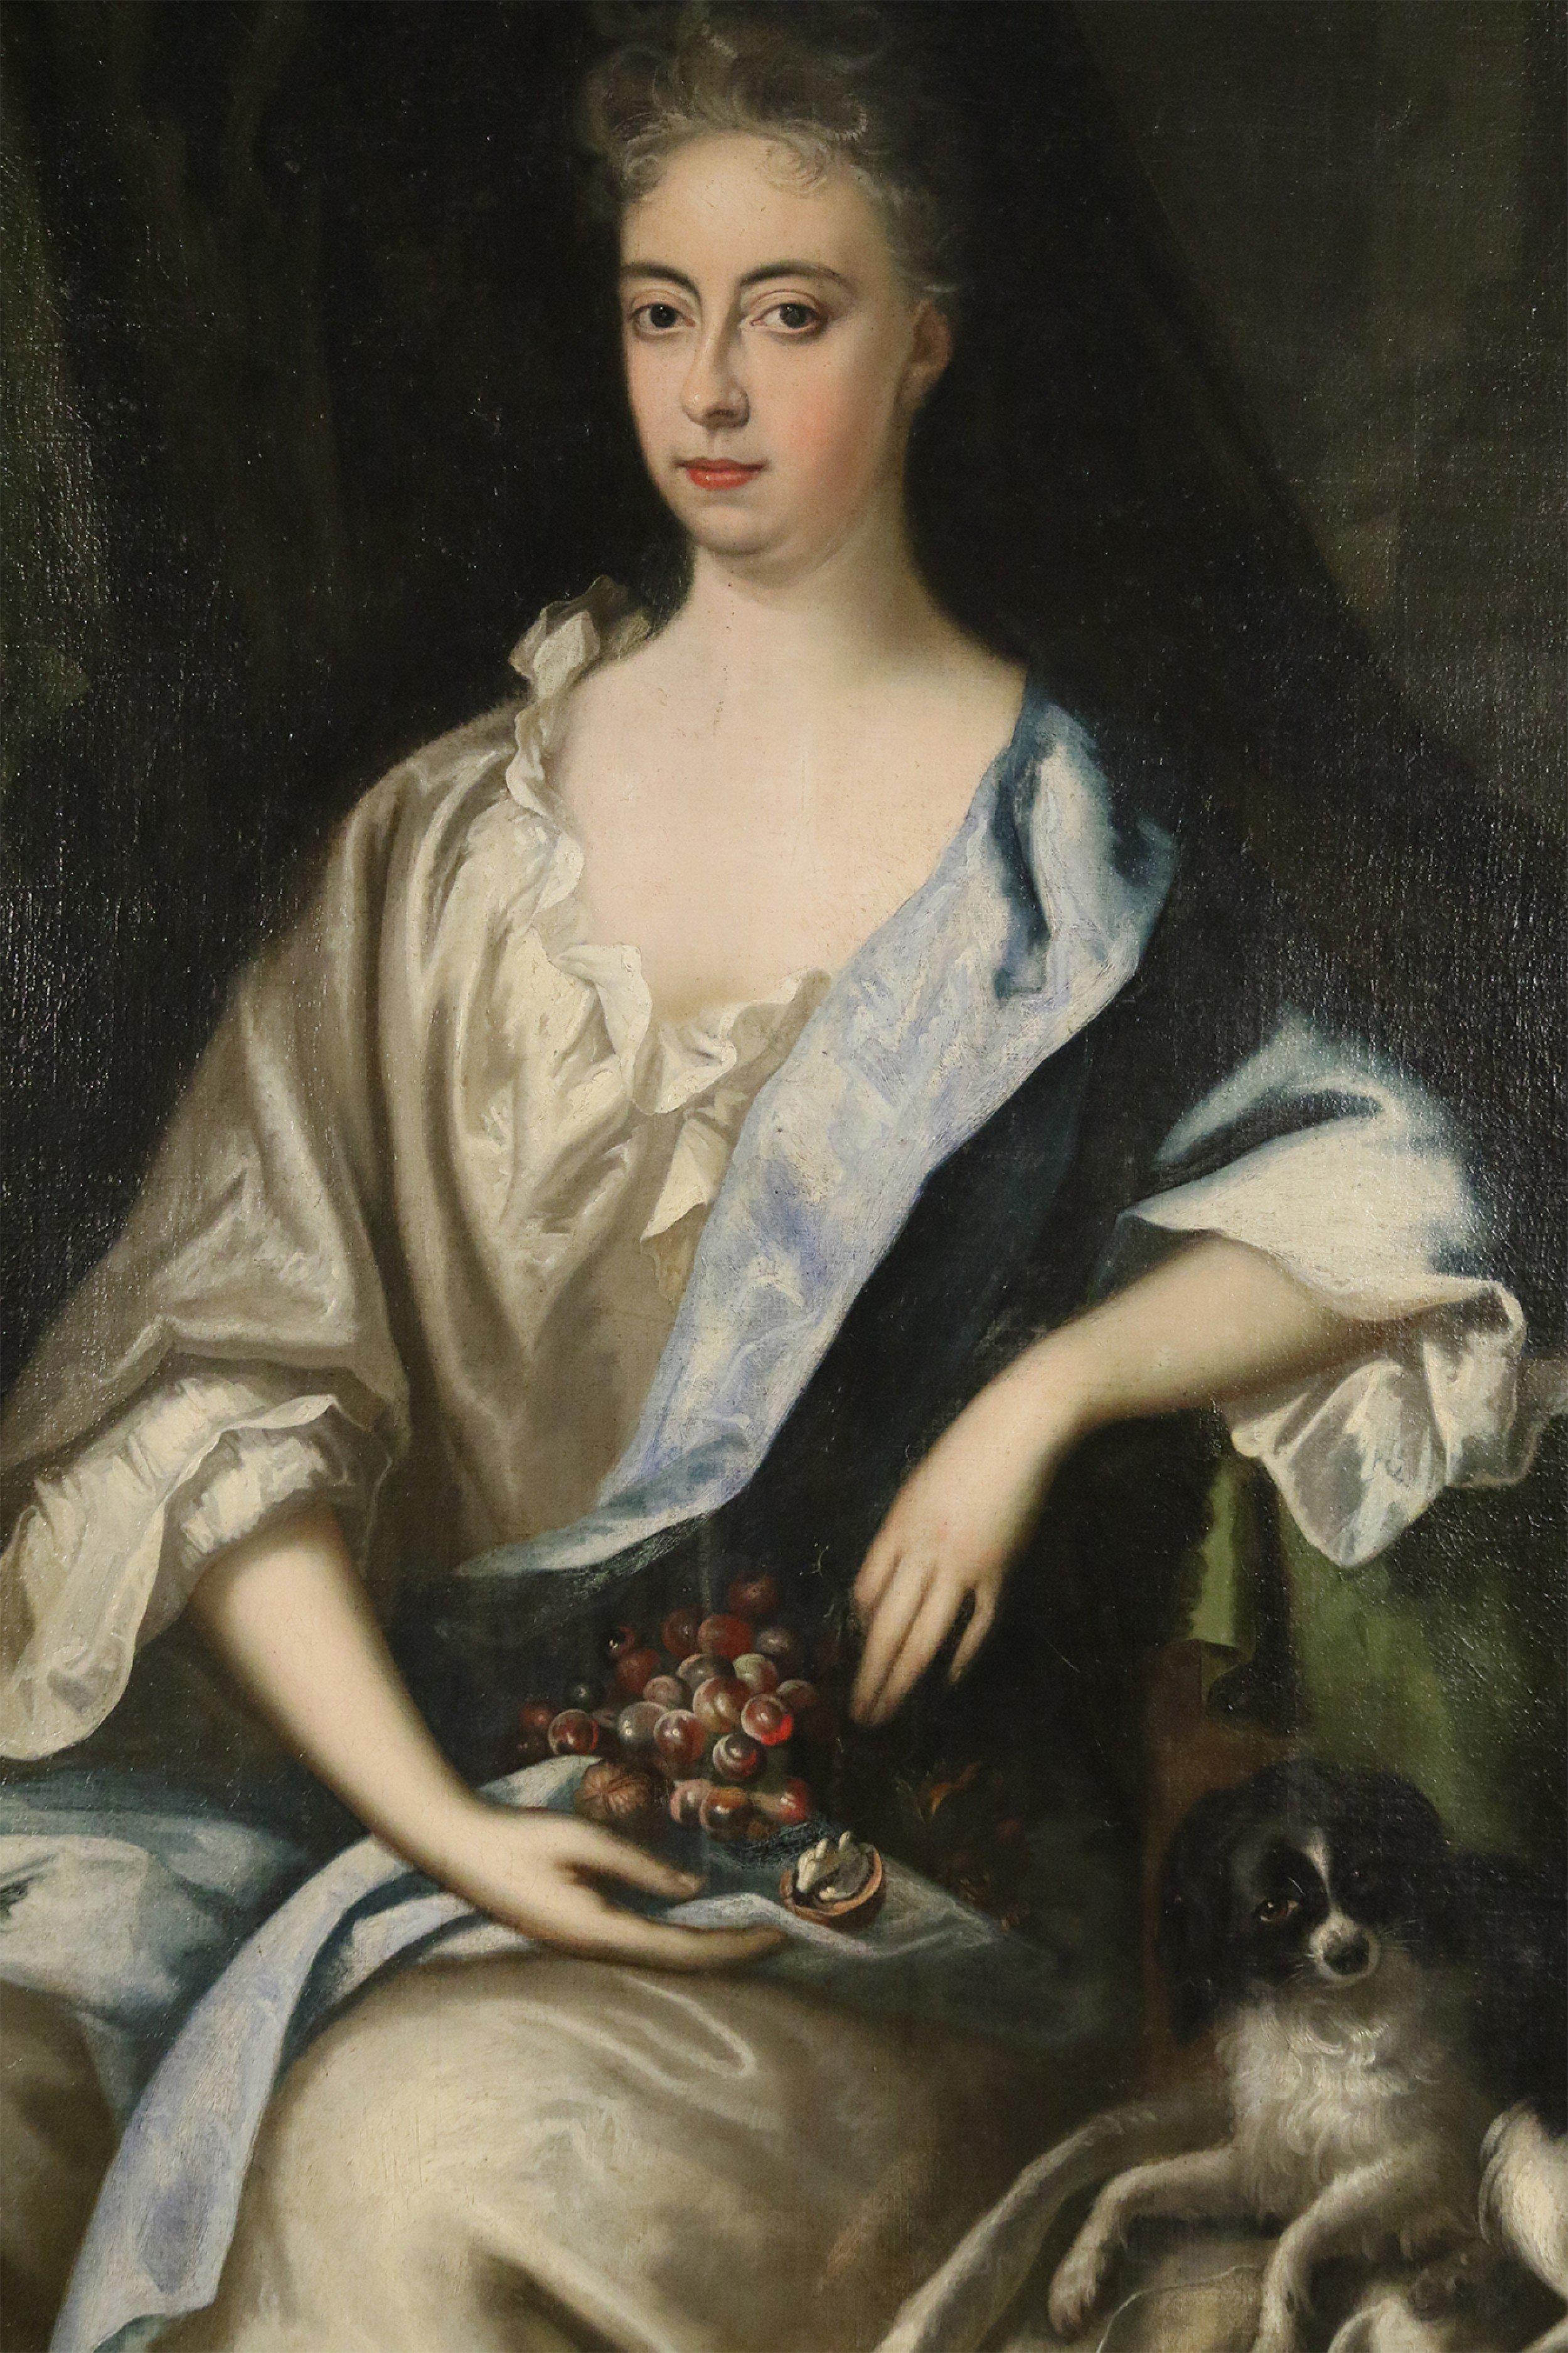 Peinture à l'huile française (18e siècle) représentant une femme tenant des raisins, assise à côté d'un chien, dans un cadre rectangulaire en bois sculpté et doré.